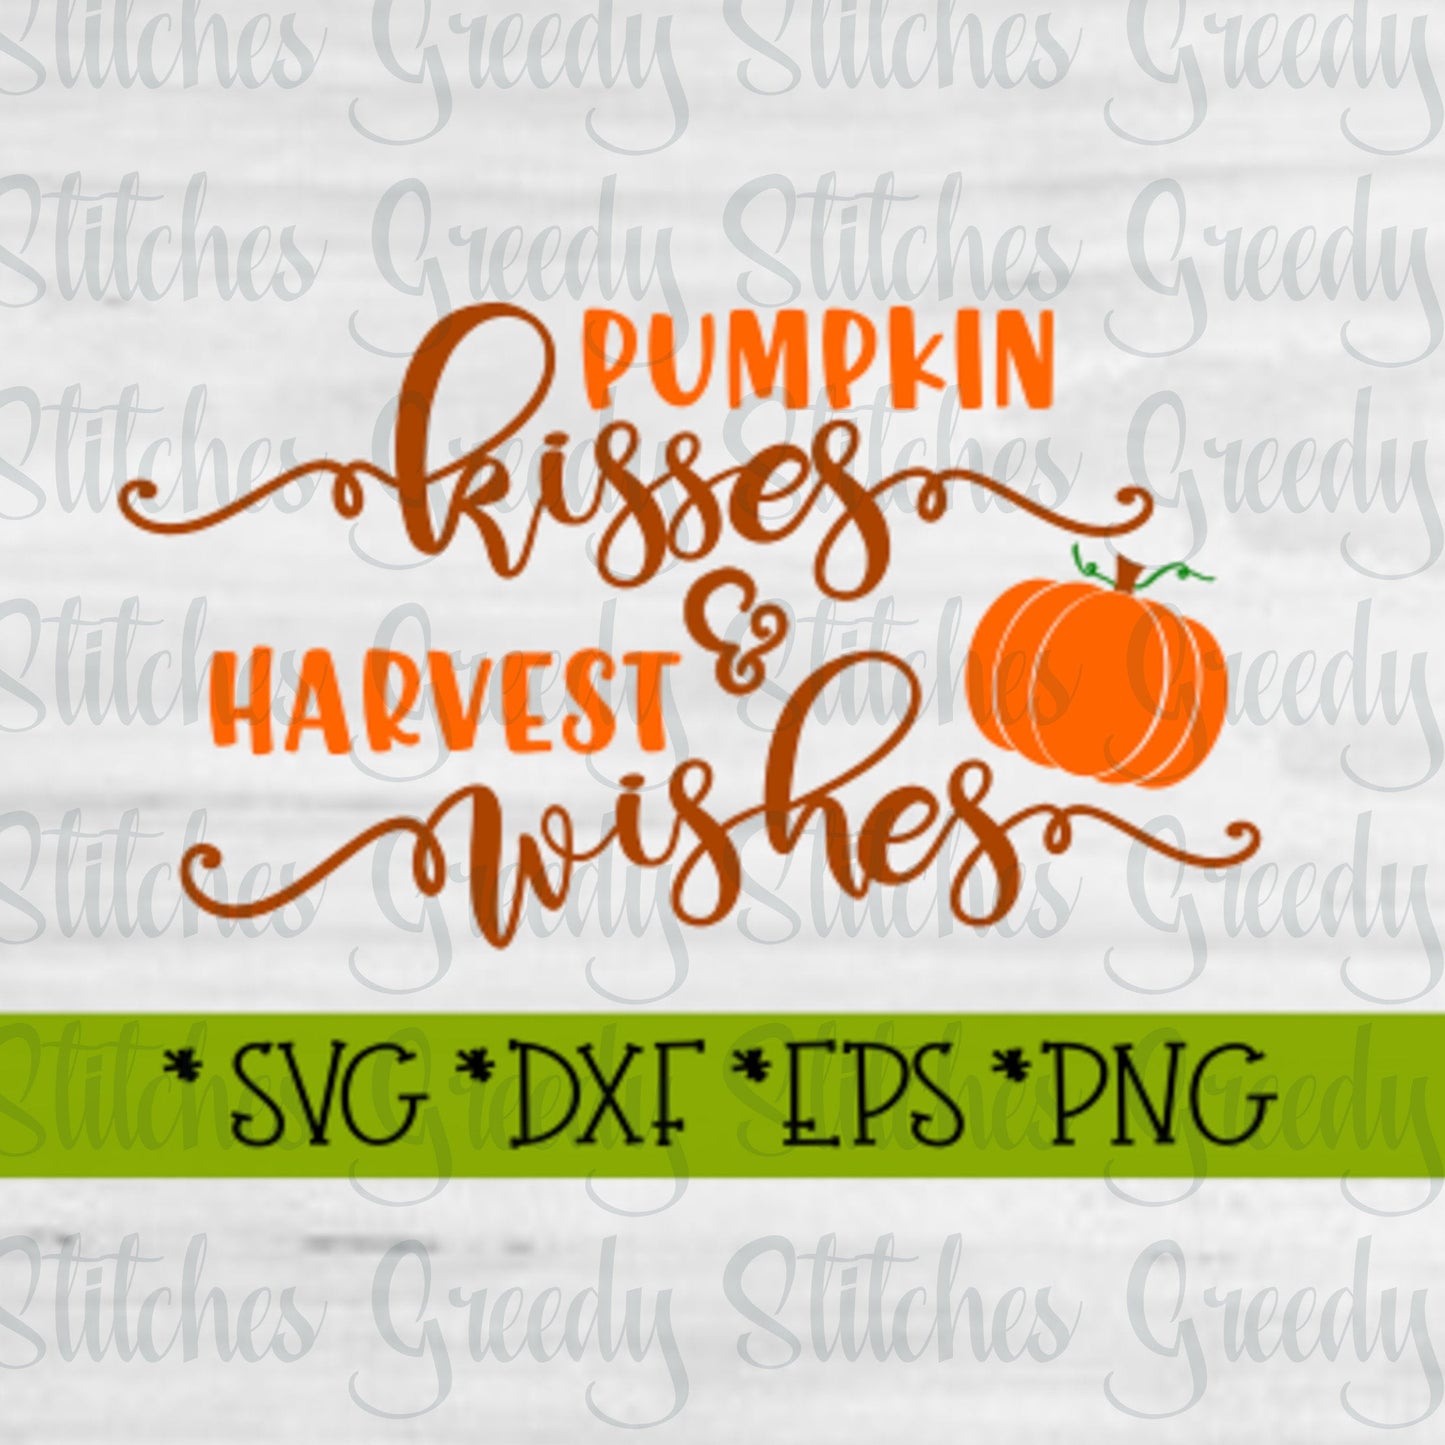 Pumpkin Kisses & Harvest Wishes SvG. DxF, EpS, PnG | Fall SvG | Halloween SvG | Thanksgiving SvG | Pumpkin SvG | Instant Download Cut Files.